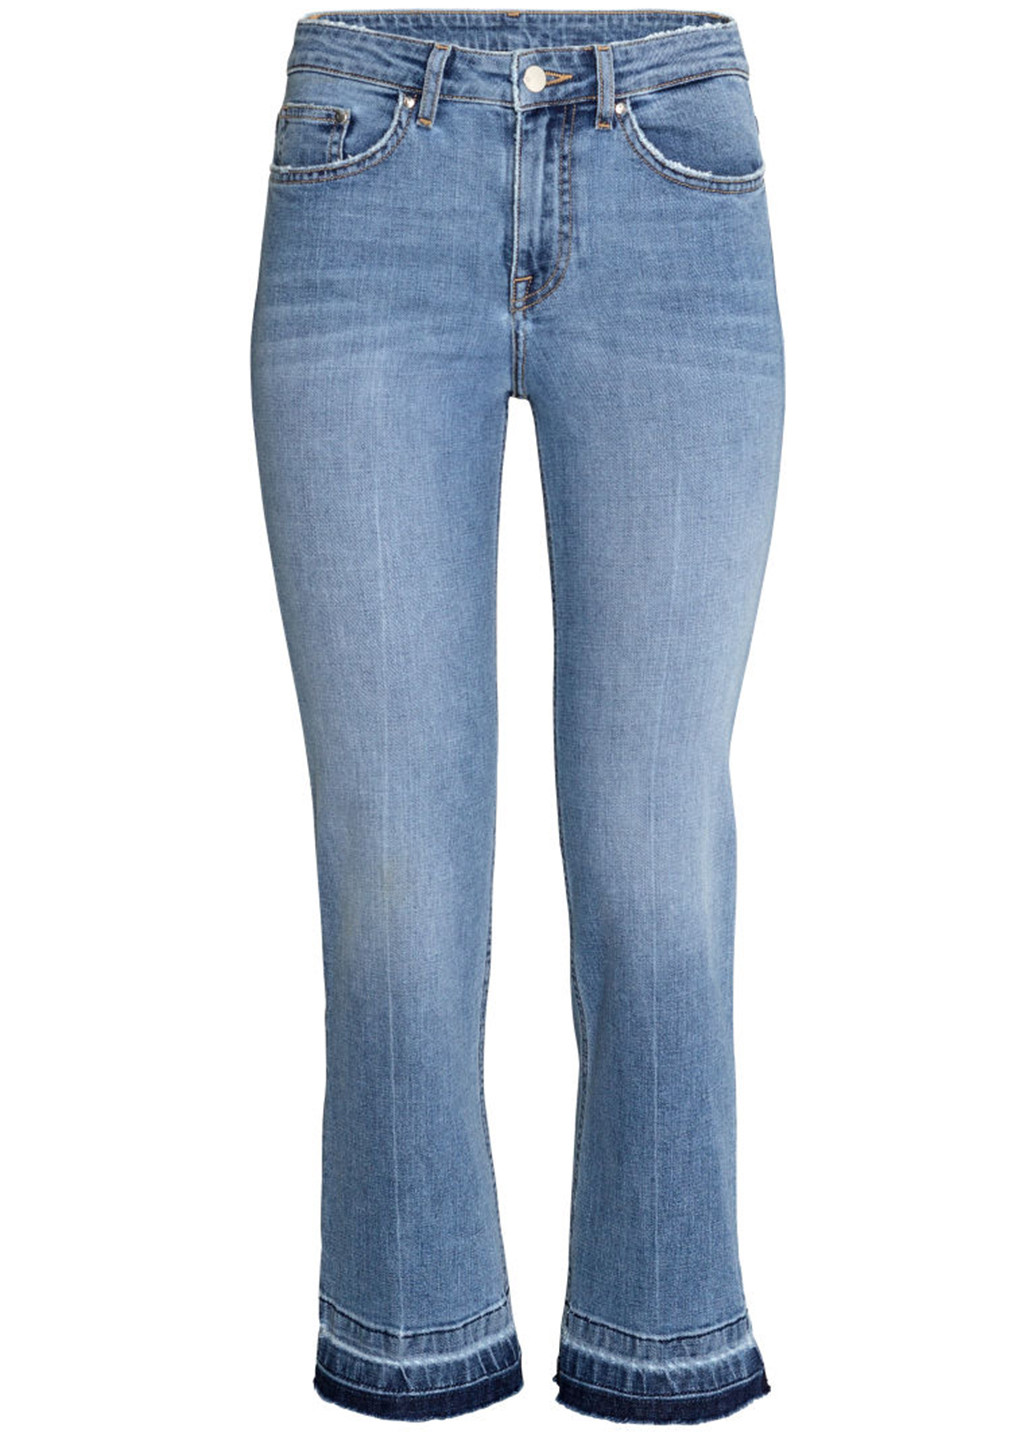 Капри H&M однотонные голубые джинсовые